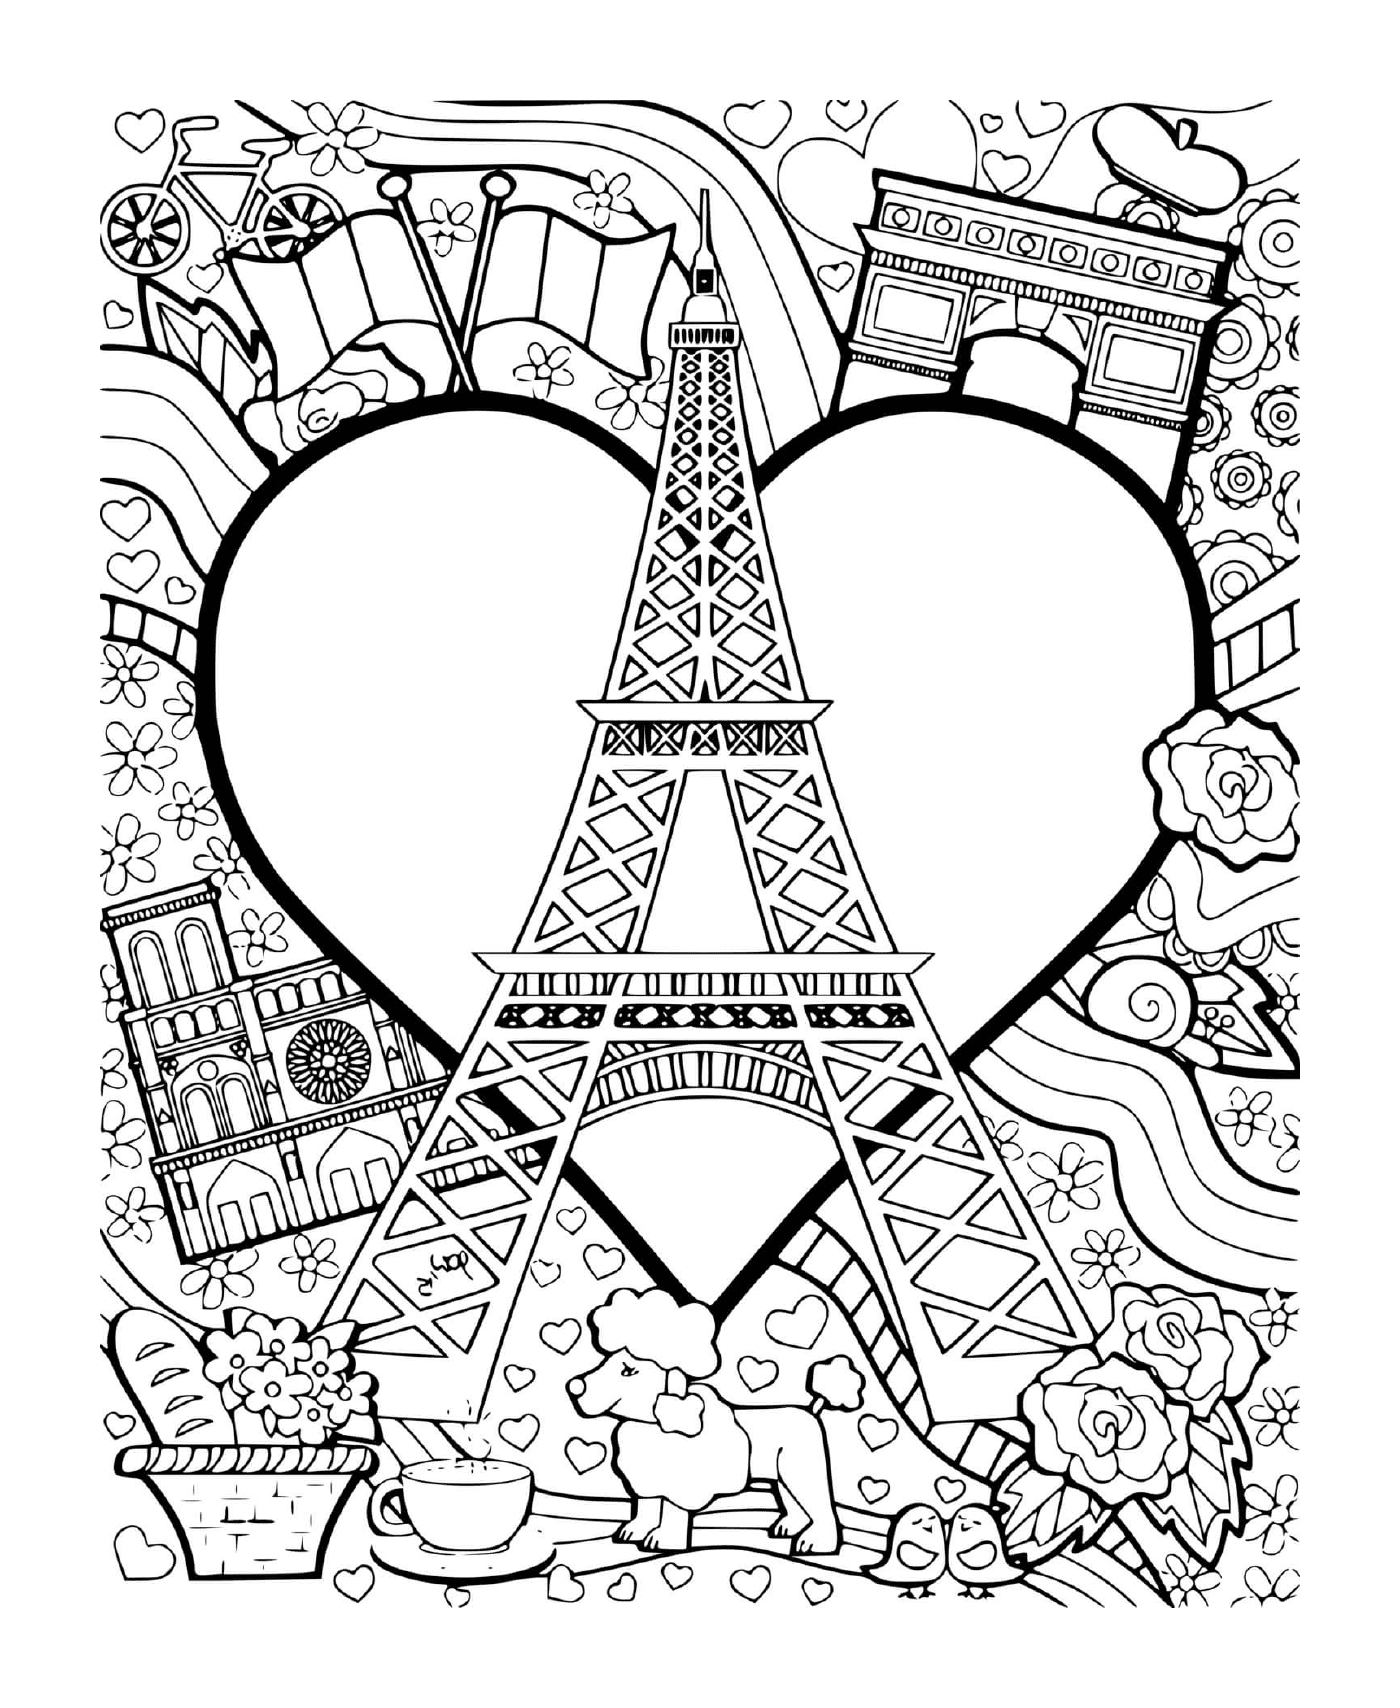   J'aime Paris, tour Eiffel, France 